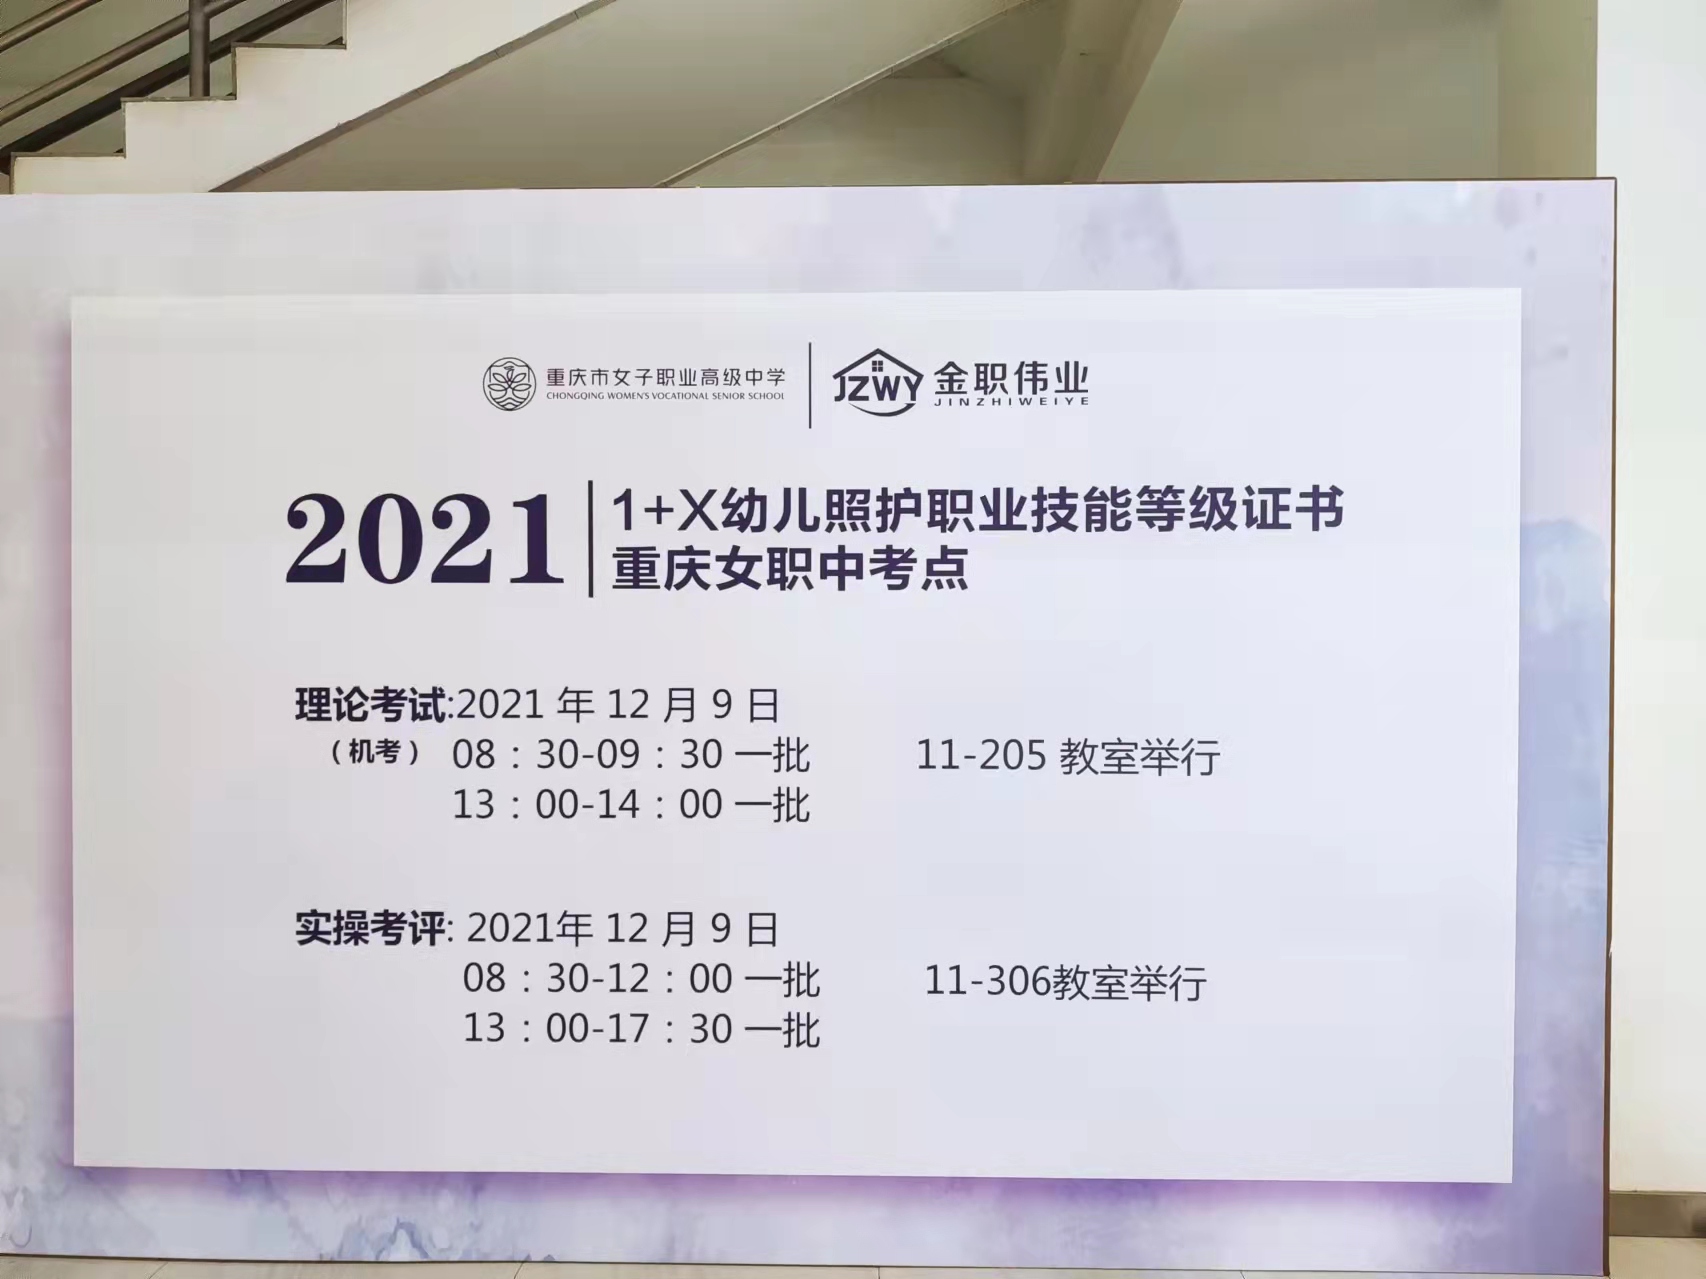 重庆市女子职业高级中学举行1+X幼儿照护职业技能等级考试